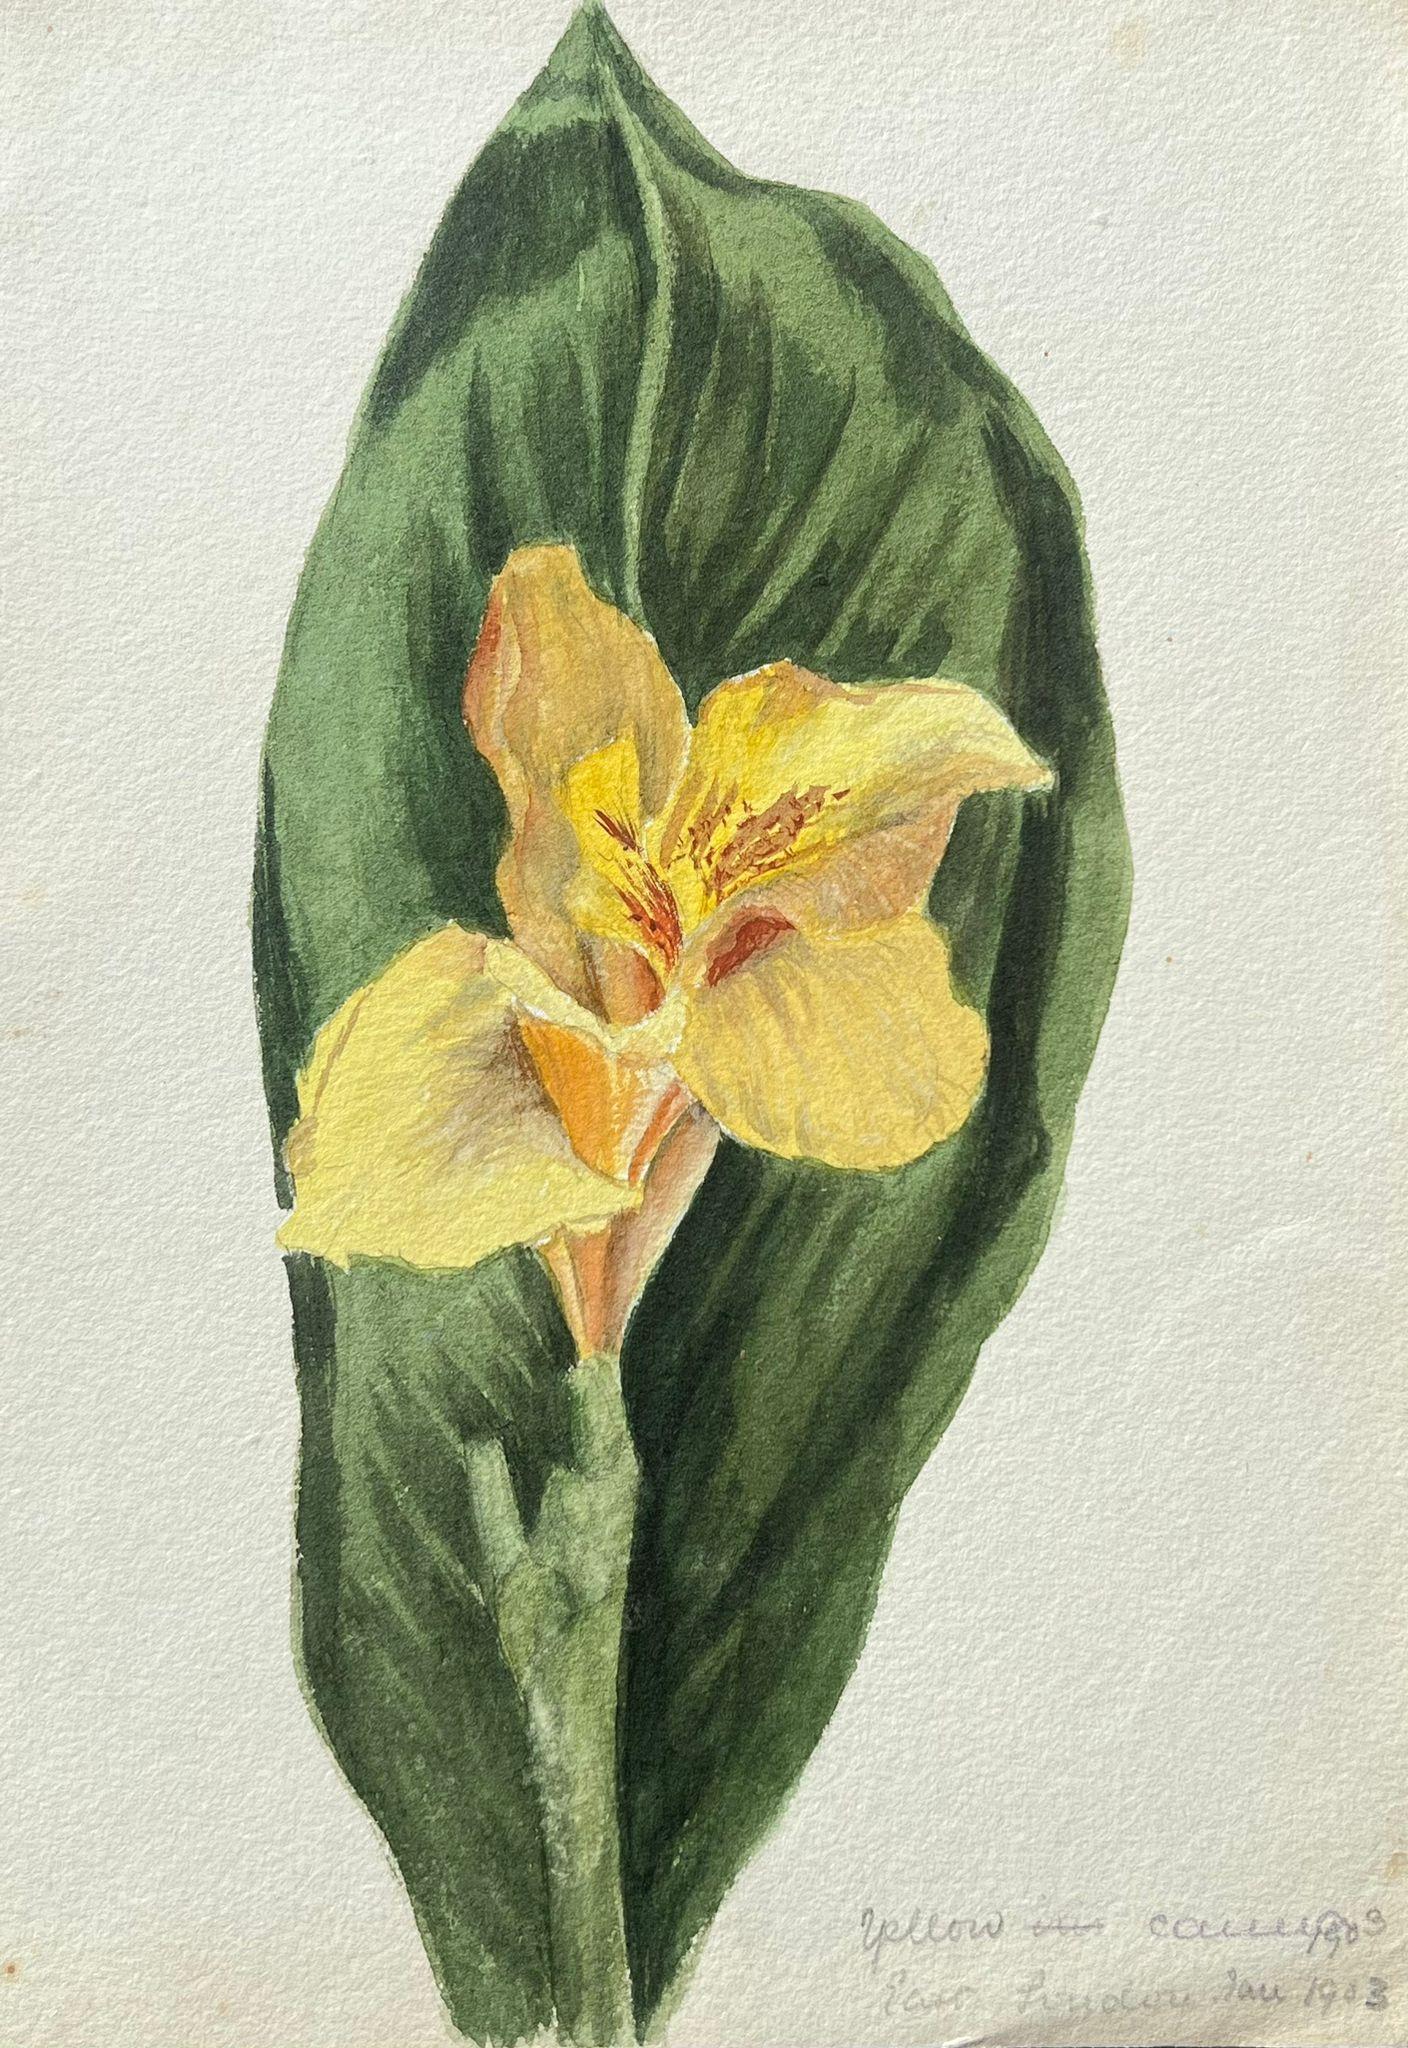 Feines antikes britisches botanisches Gemälde, ein einzelnes Daffodil